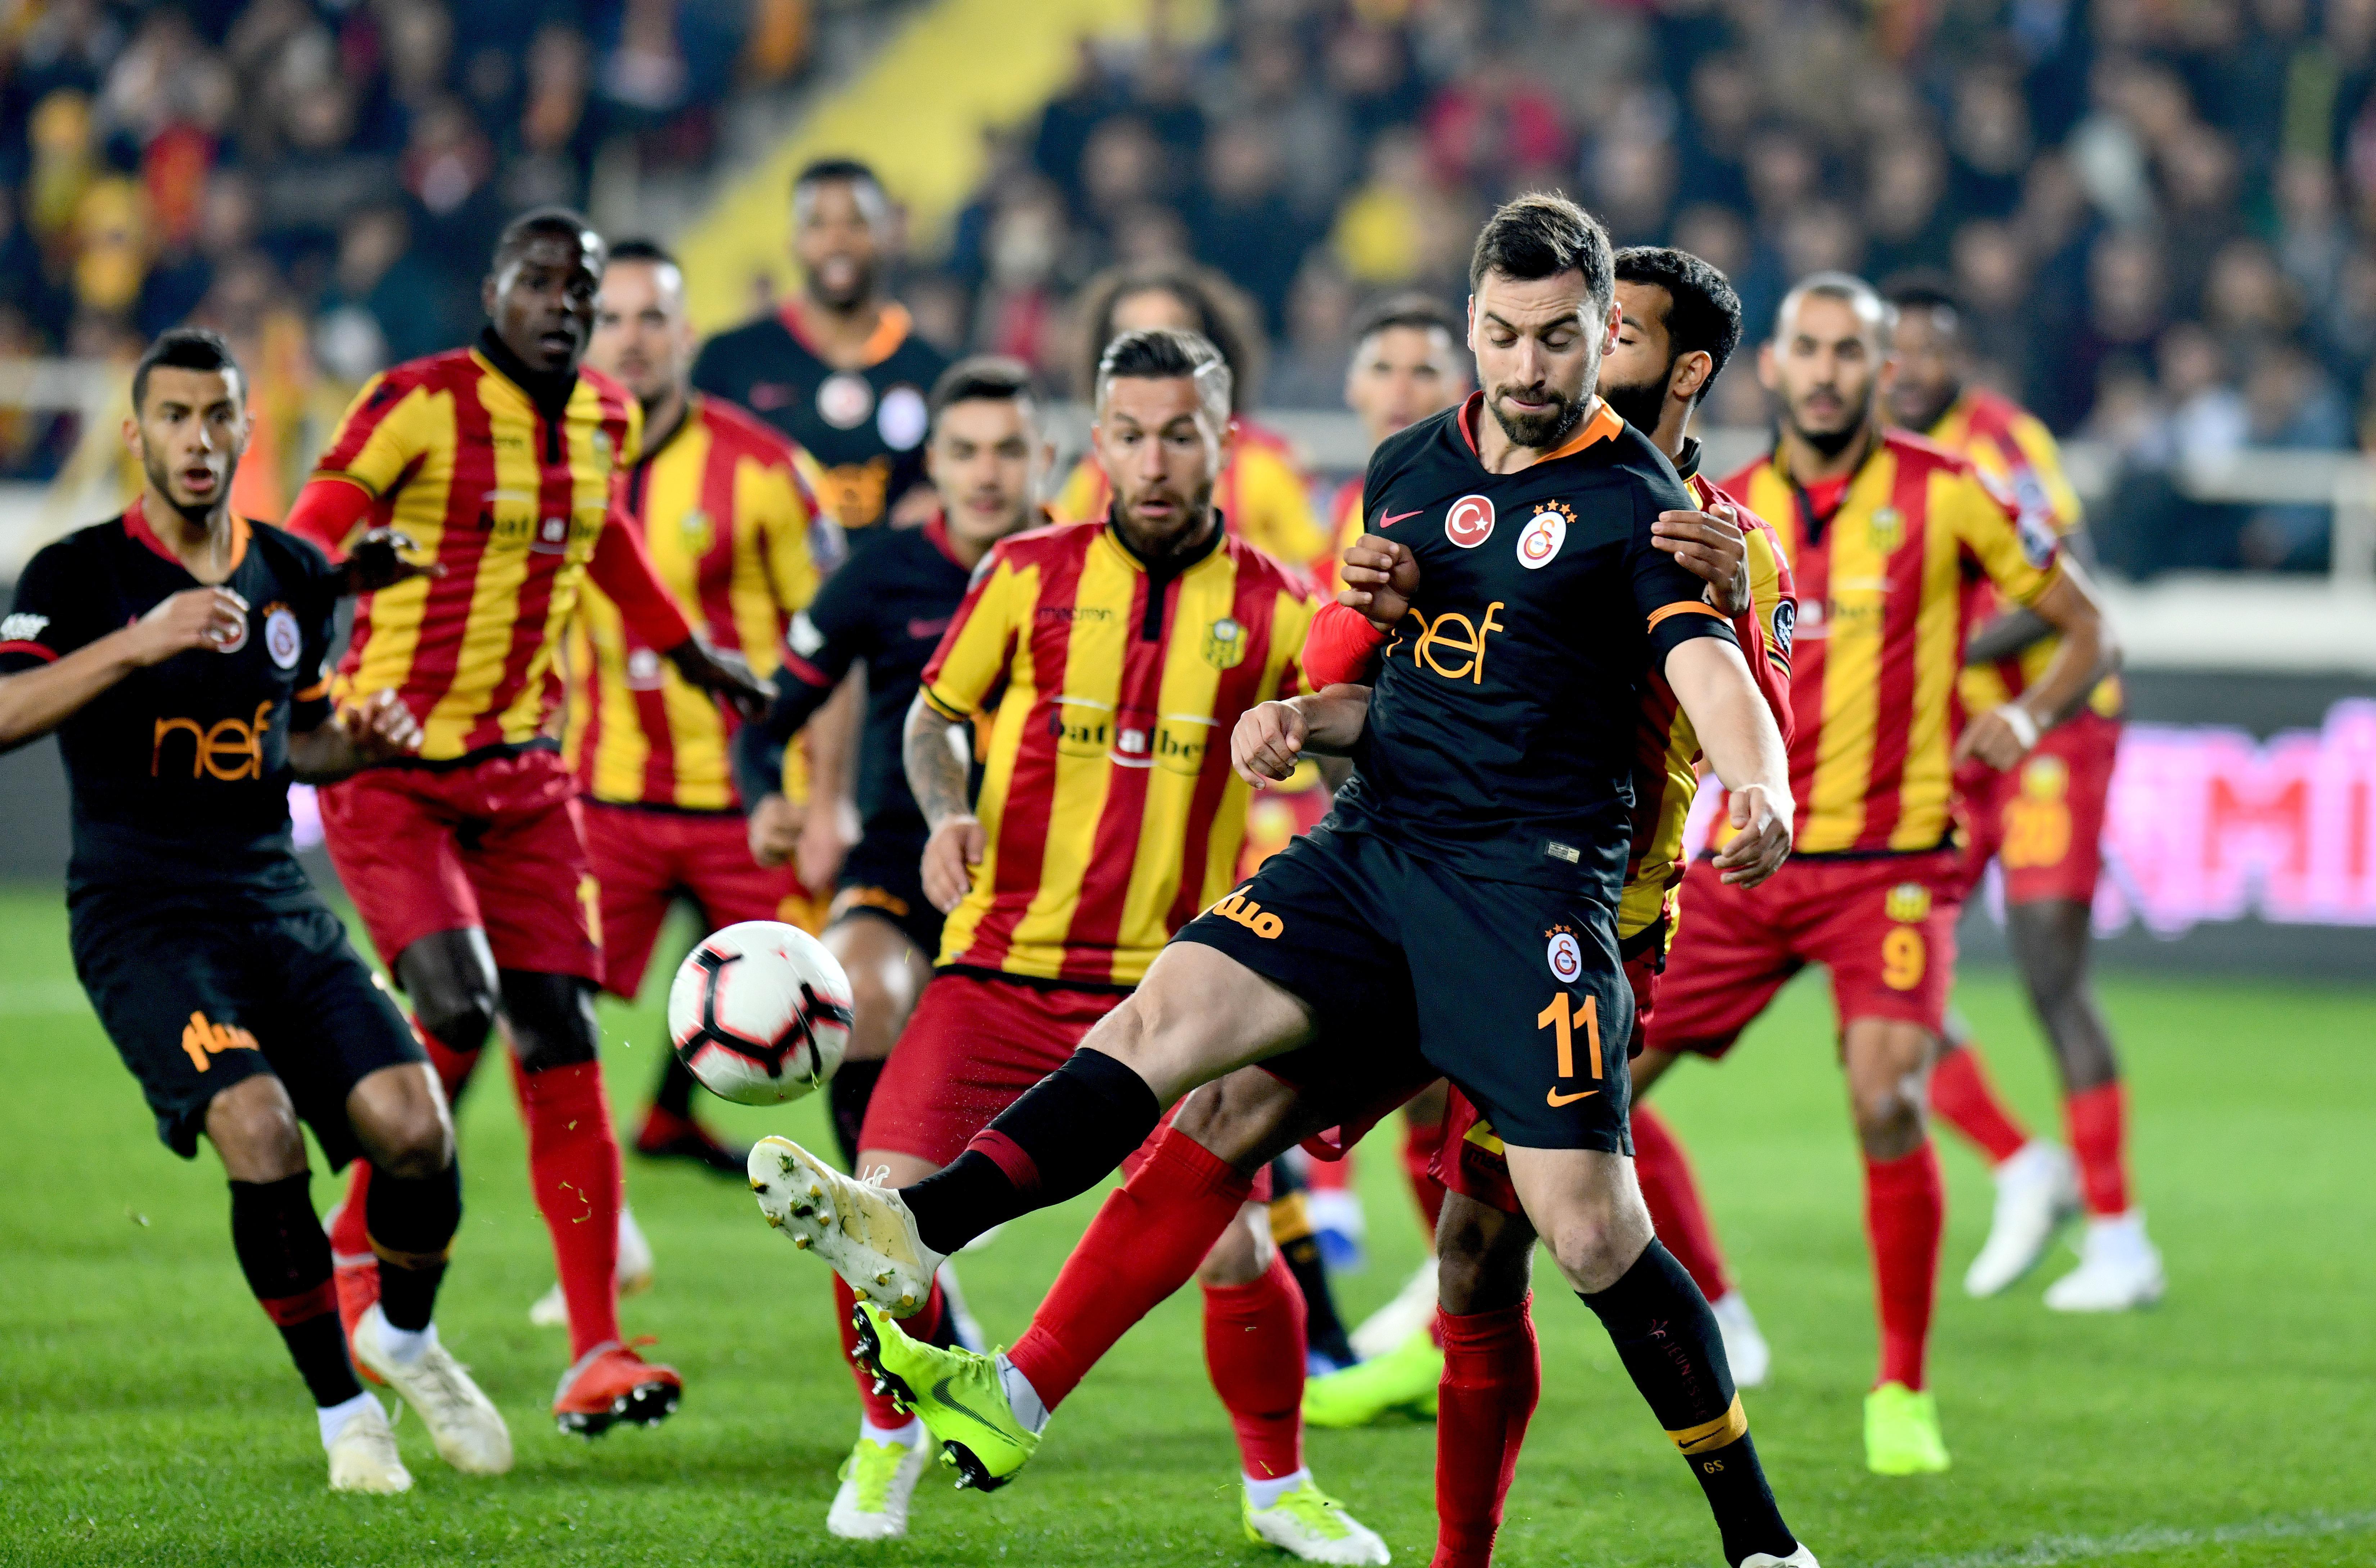 Yeni Malatyaspor-Galatasaray maç sonucu: 2-0